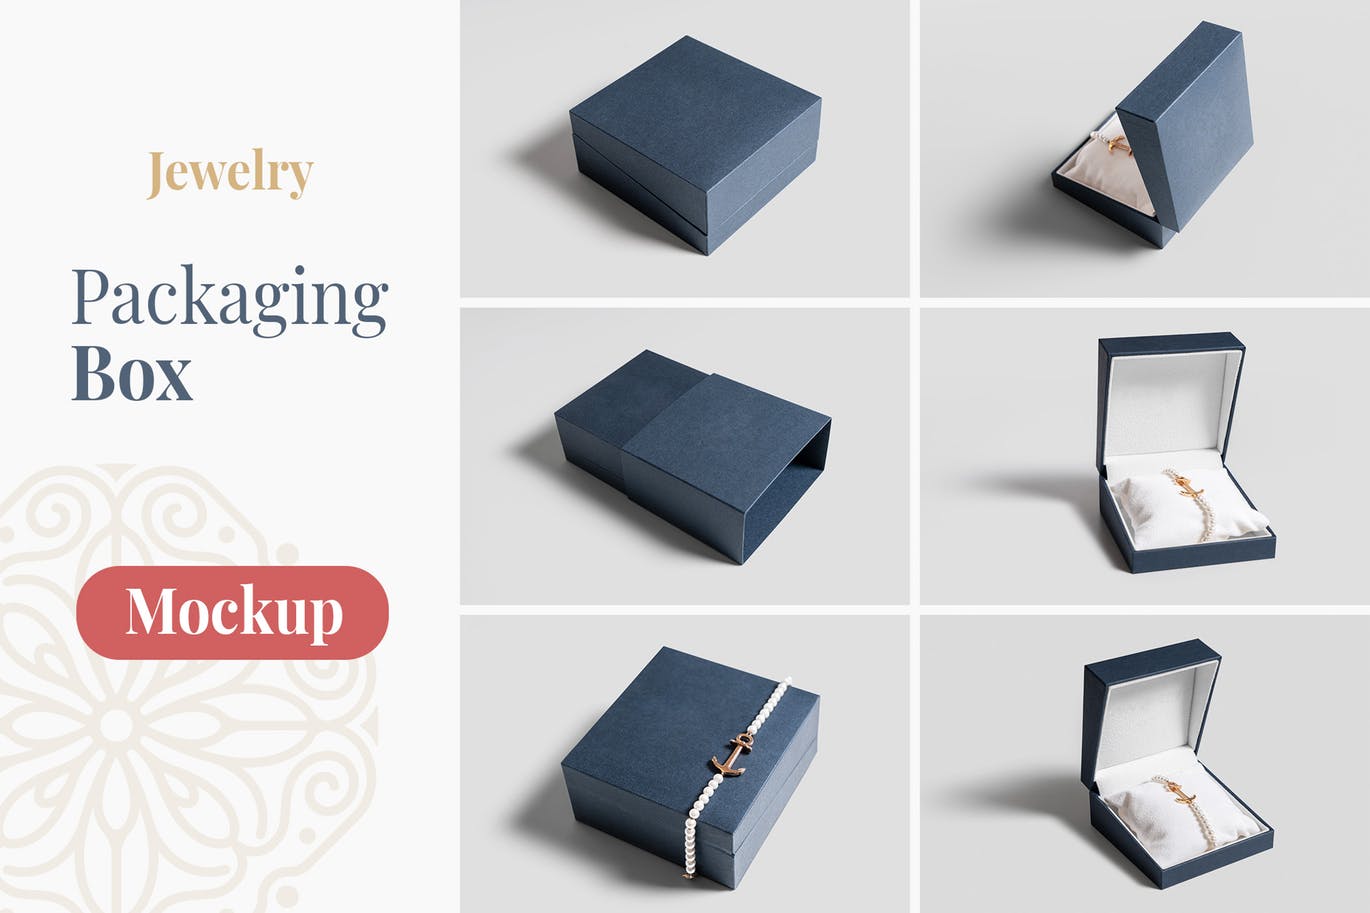 珠宝设计包装盒图样机模板 Jewelry Packaging Box Mockups设计素材模板